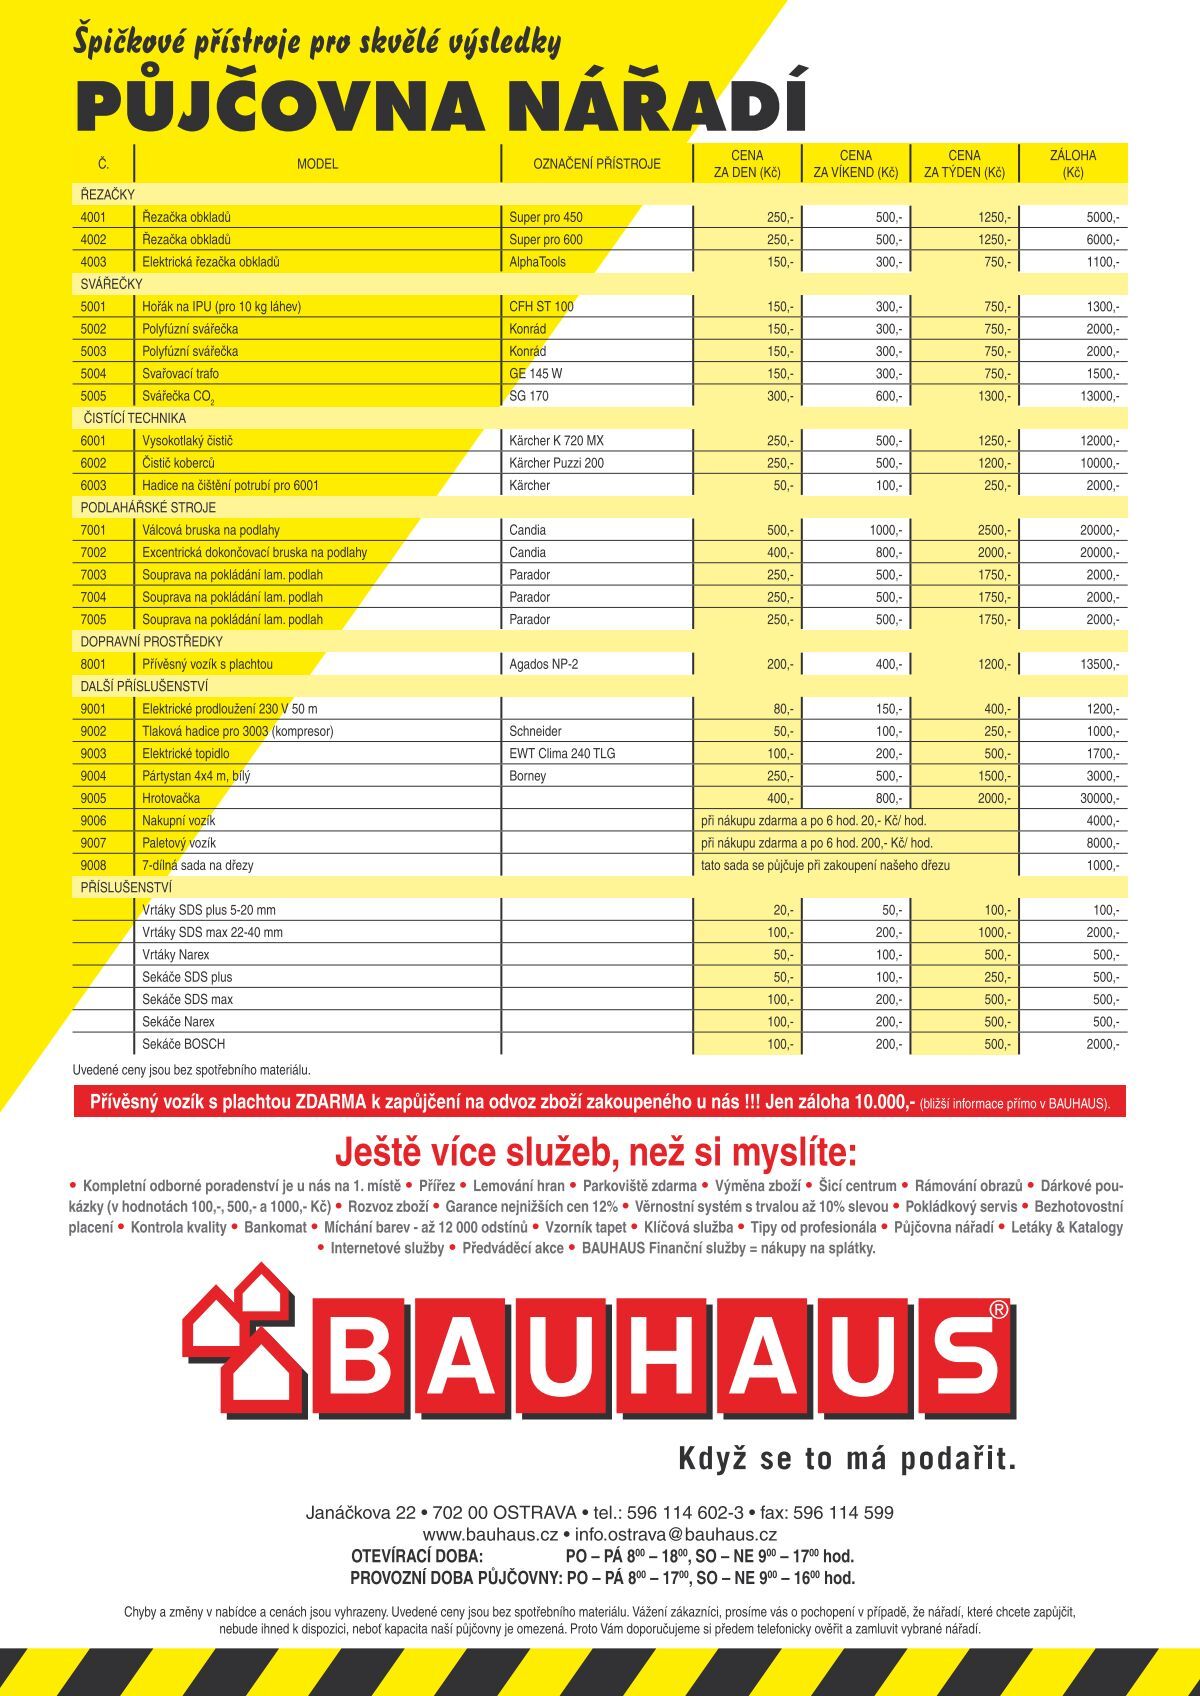 PŮJČOVNA NÁŘADÍ - Bauhaus